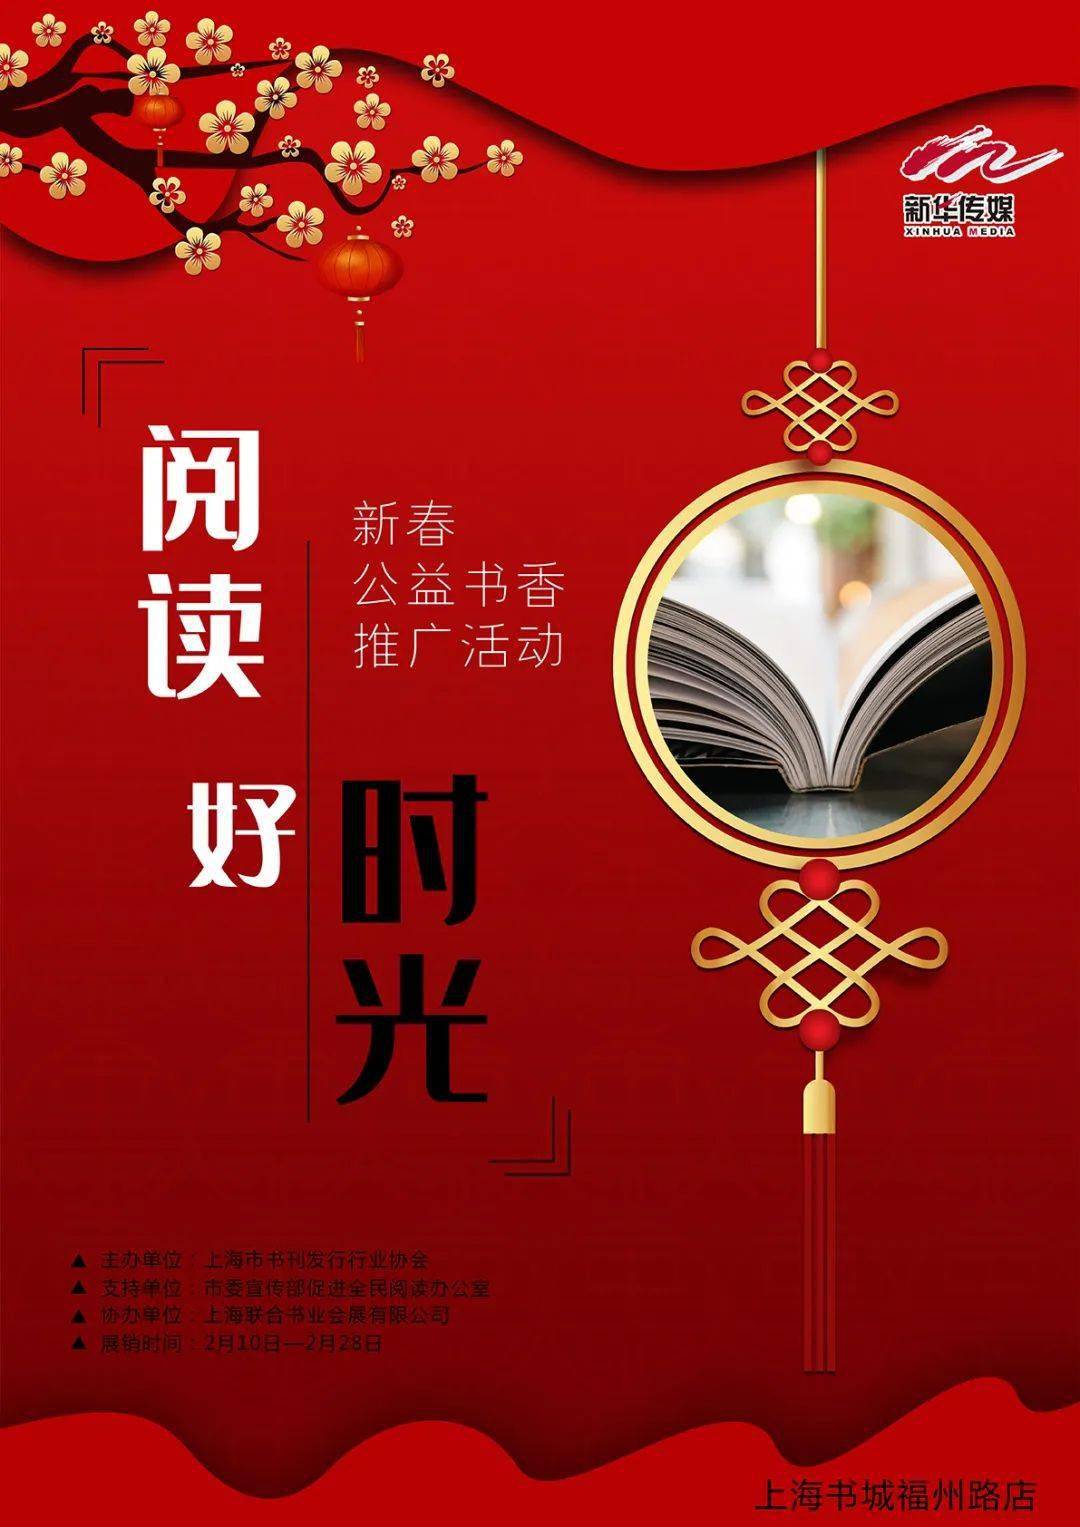 以下为参展书店海报呈现 上海书城福州路店 责任编辑